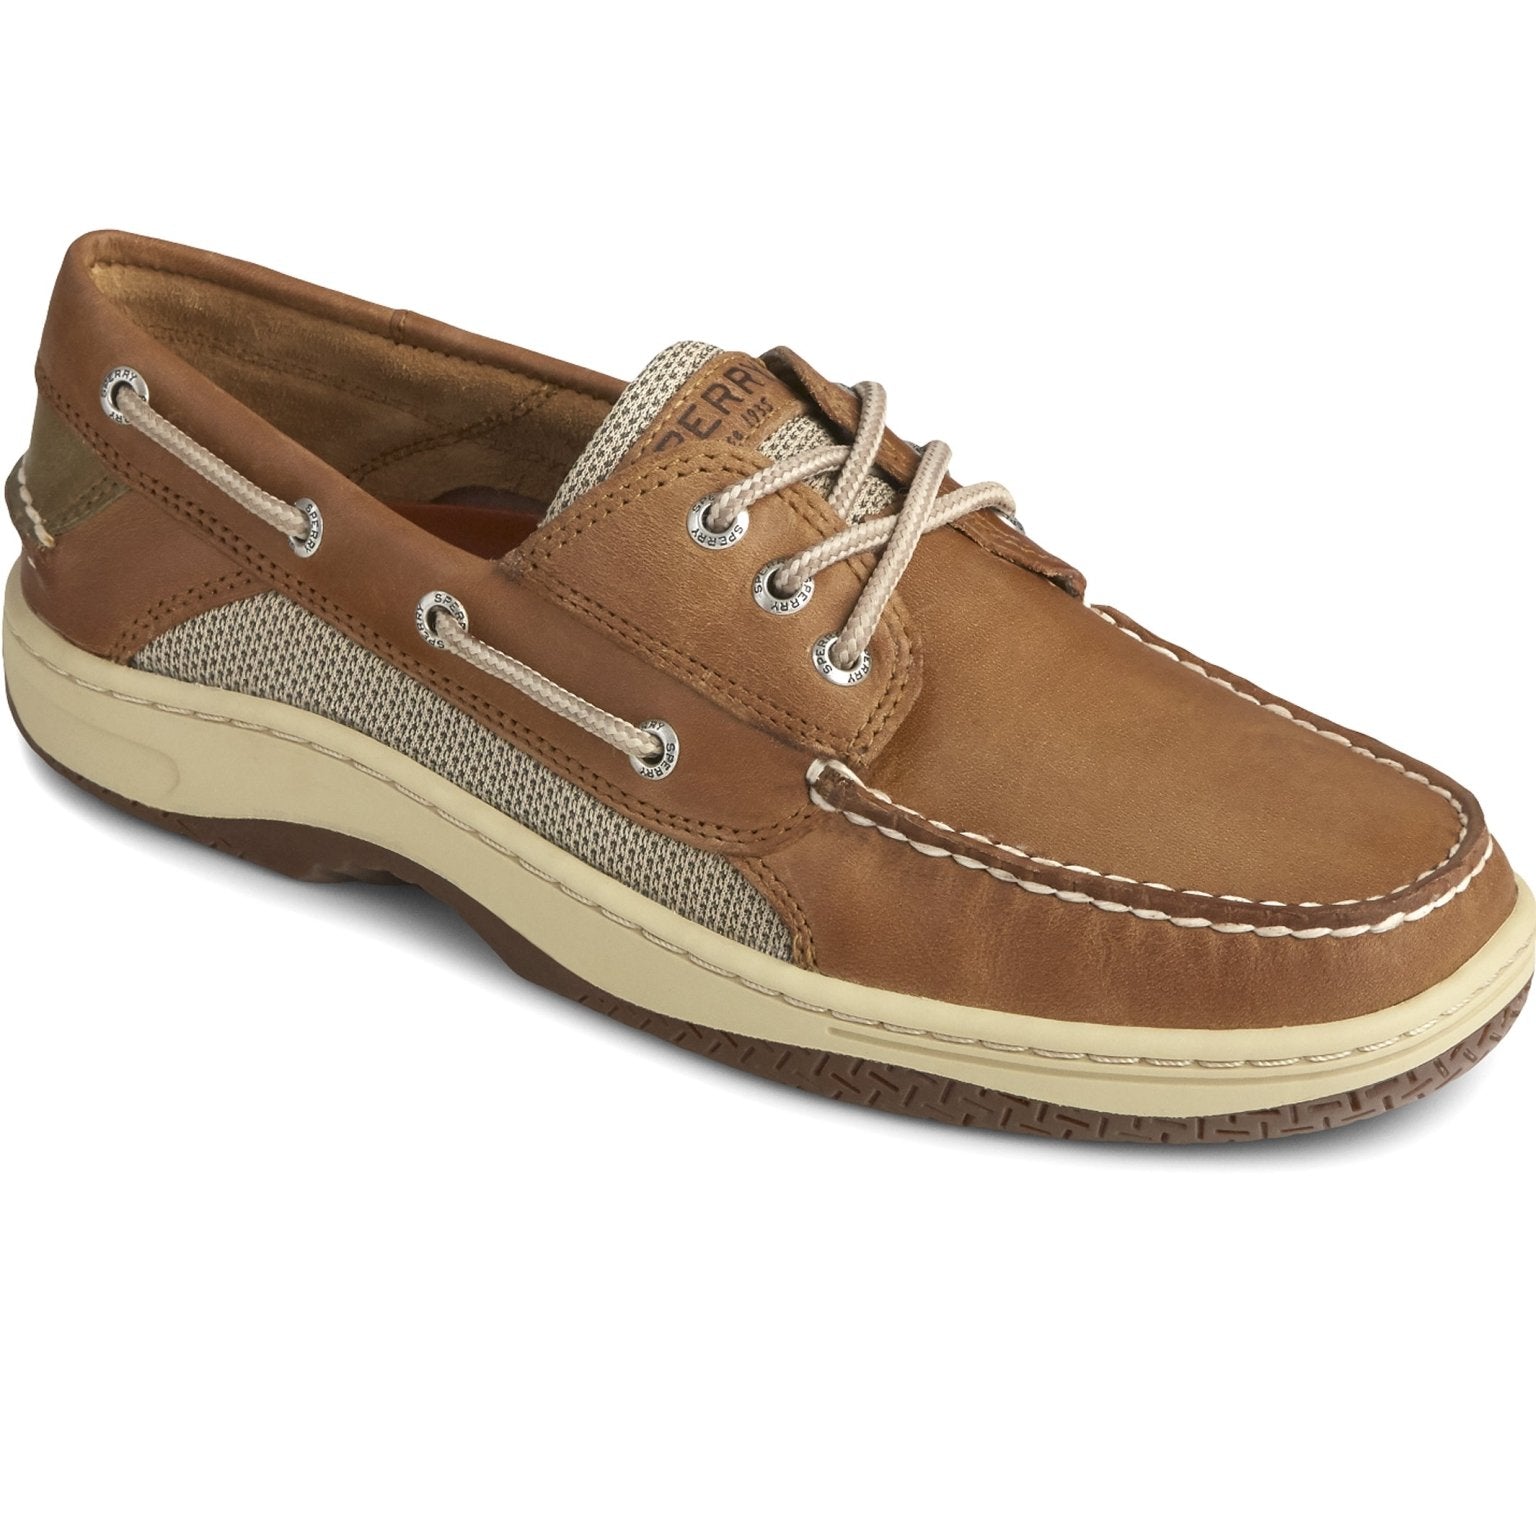 Sperry Sperry - Men's boat shoe - Billfish 3 - Eye Boat Shoe Dark Tan - Deck shoes Shoes